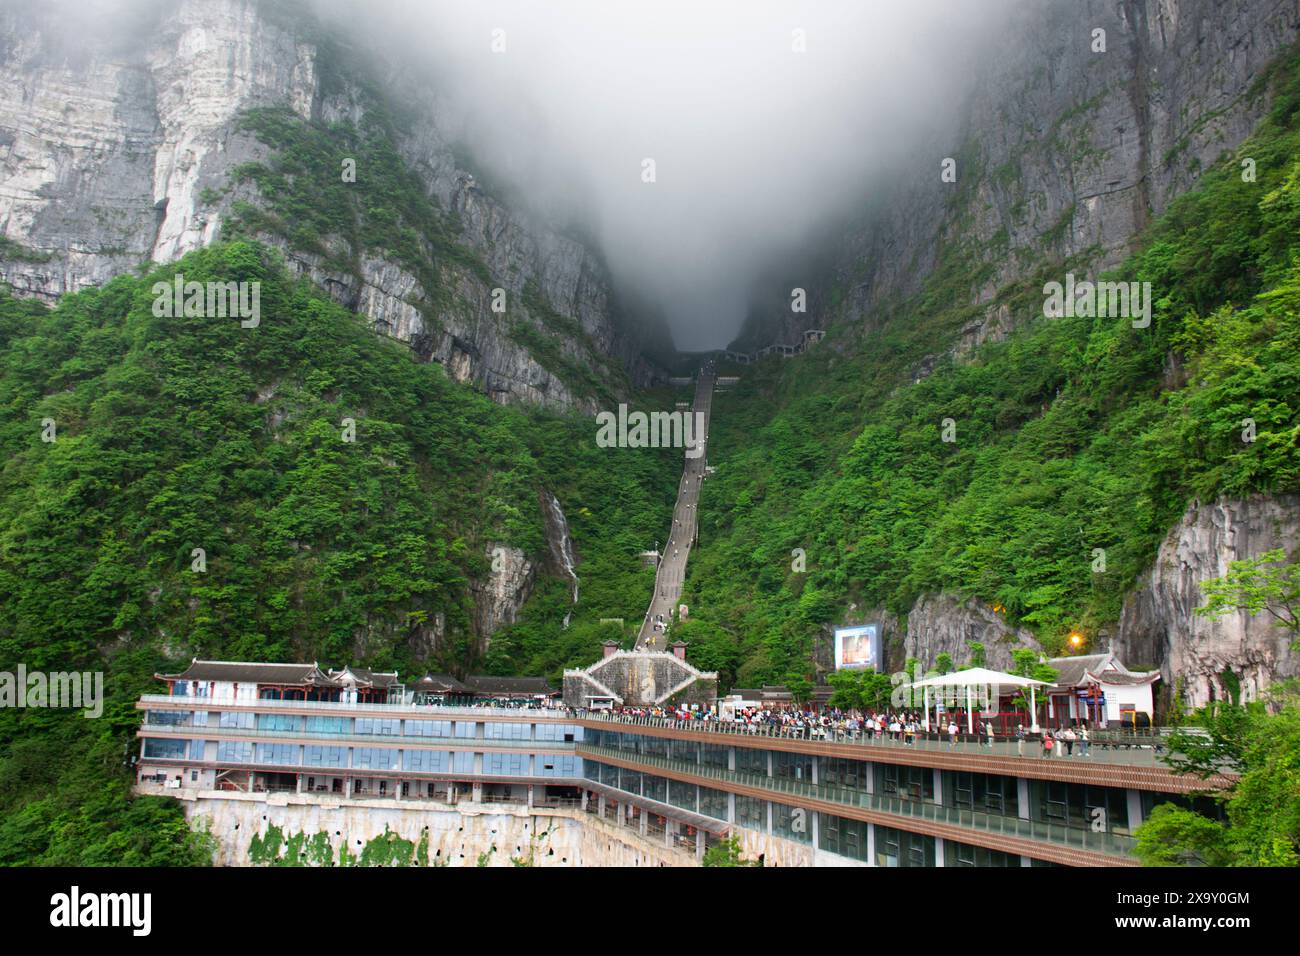 La grotta Tianmen Shan o la porta del Paradiso nel Parco Nazionale della Foresta di Tianmenshan Mountain per i viaggiatori cinesi che viaggiano visitano camminando sulle scale rispettano i desideri Foto Stock